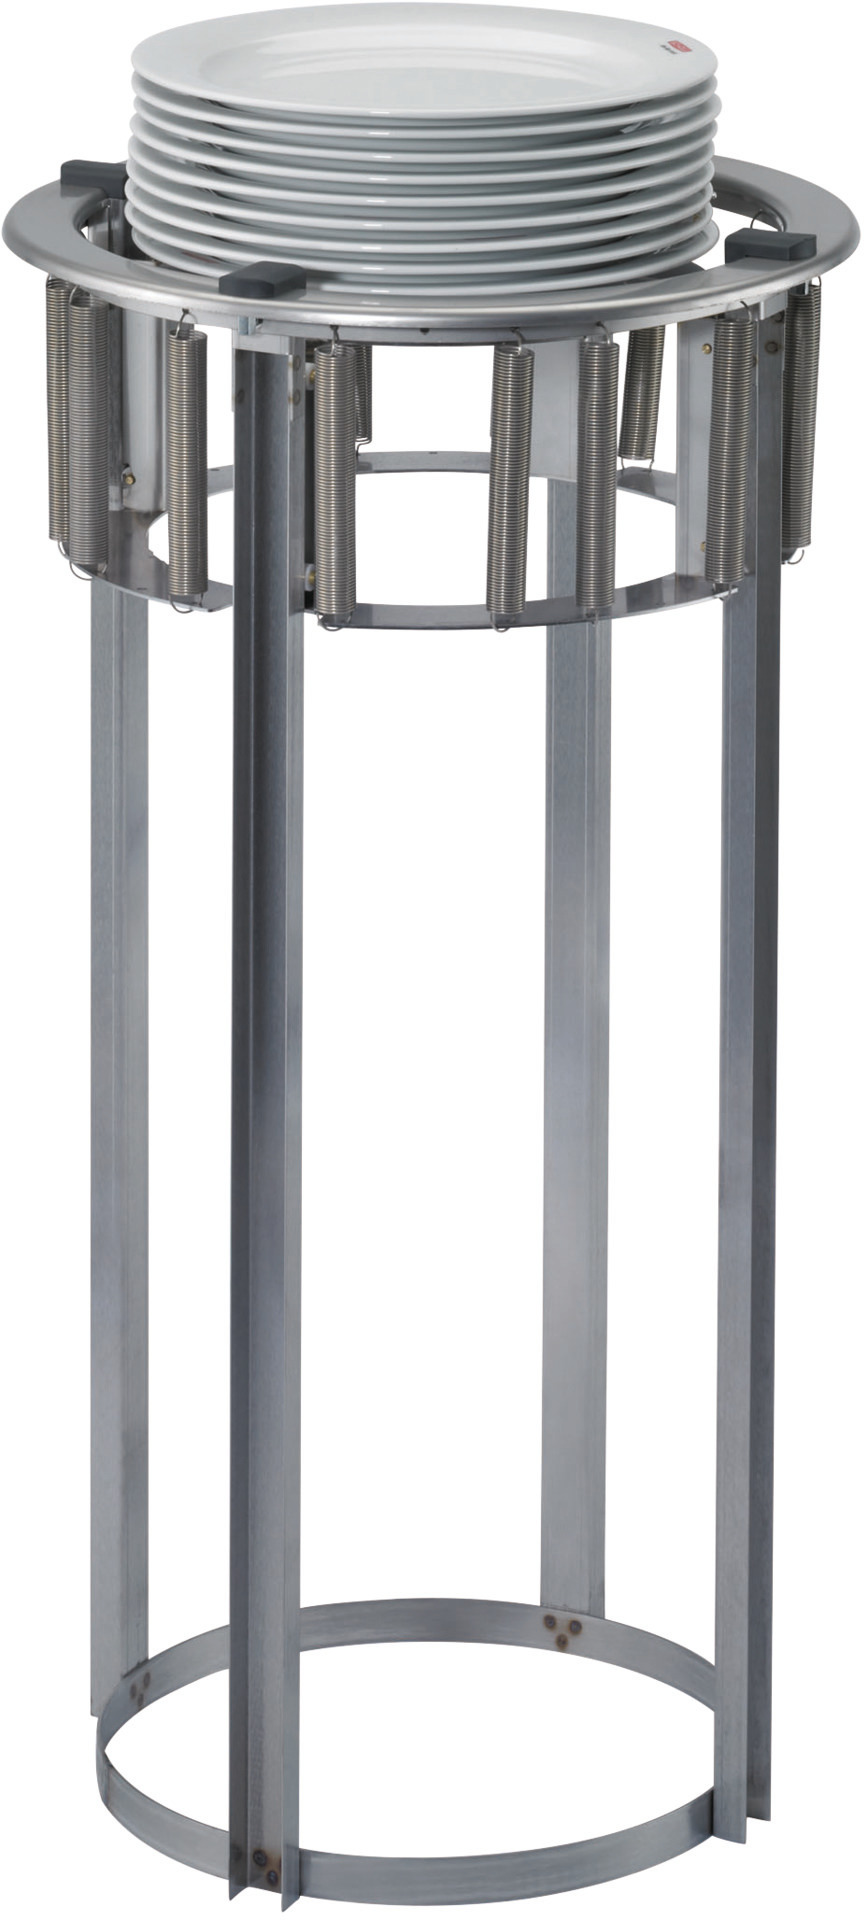 Teller-Einbauspender unbeheizt für 50 Teller 260 - 308 mm Einbautiefe 760 mm